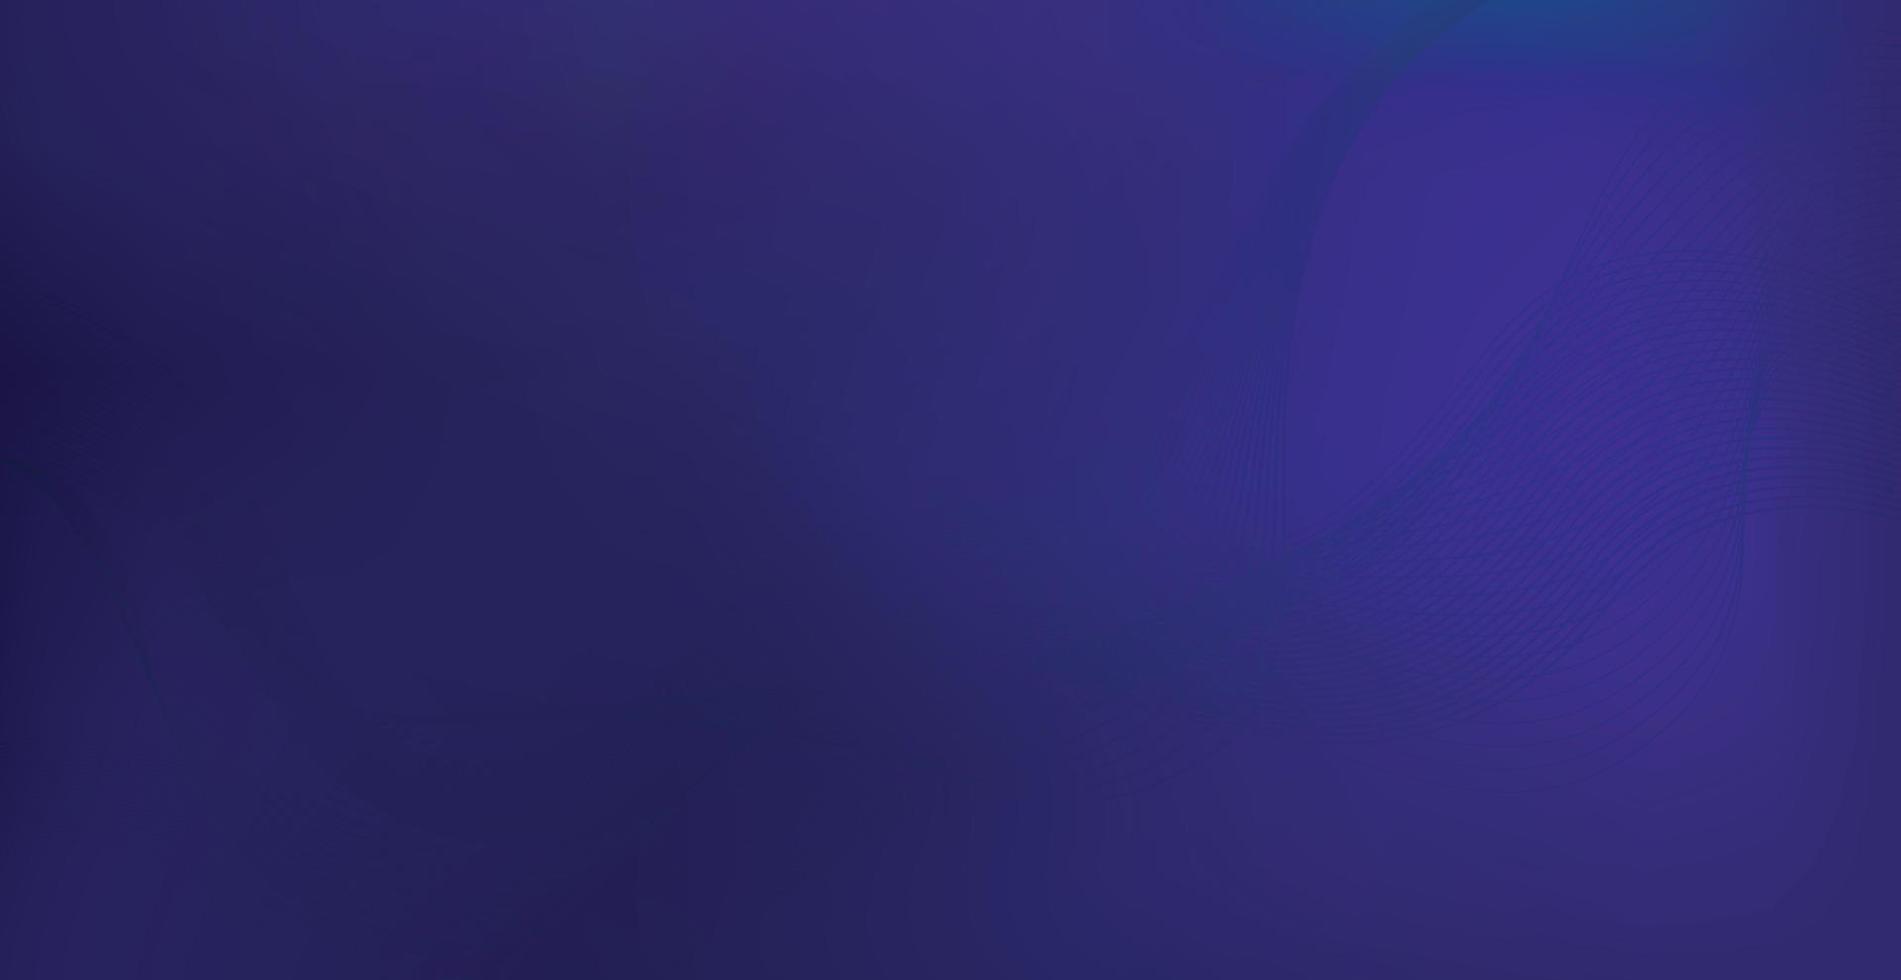 panorámico azul púrpura oscuro abstracto elegante multi fondo con líneas onduladas - vector